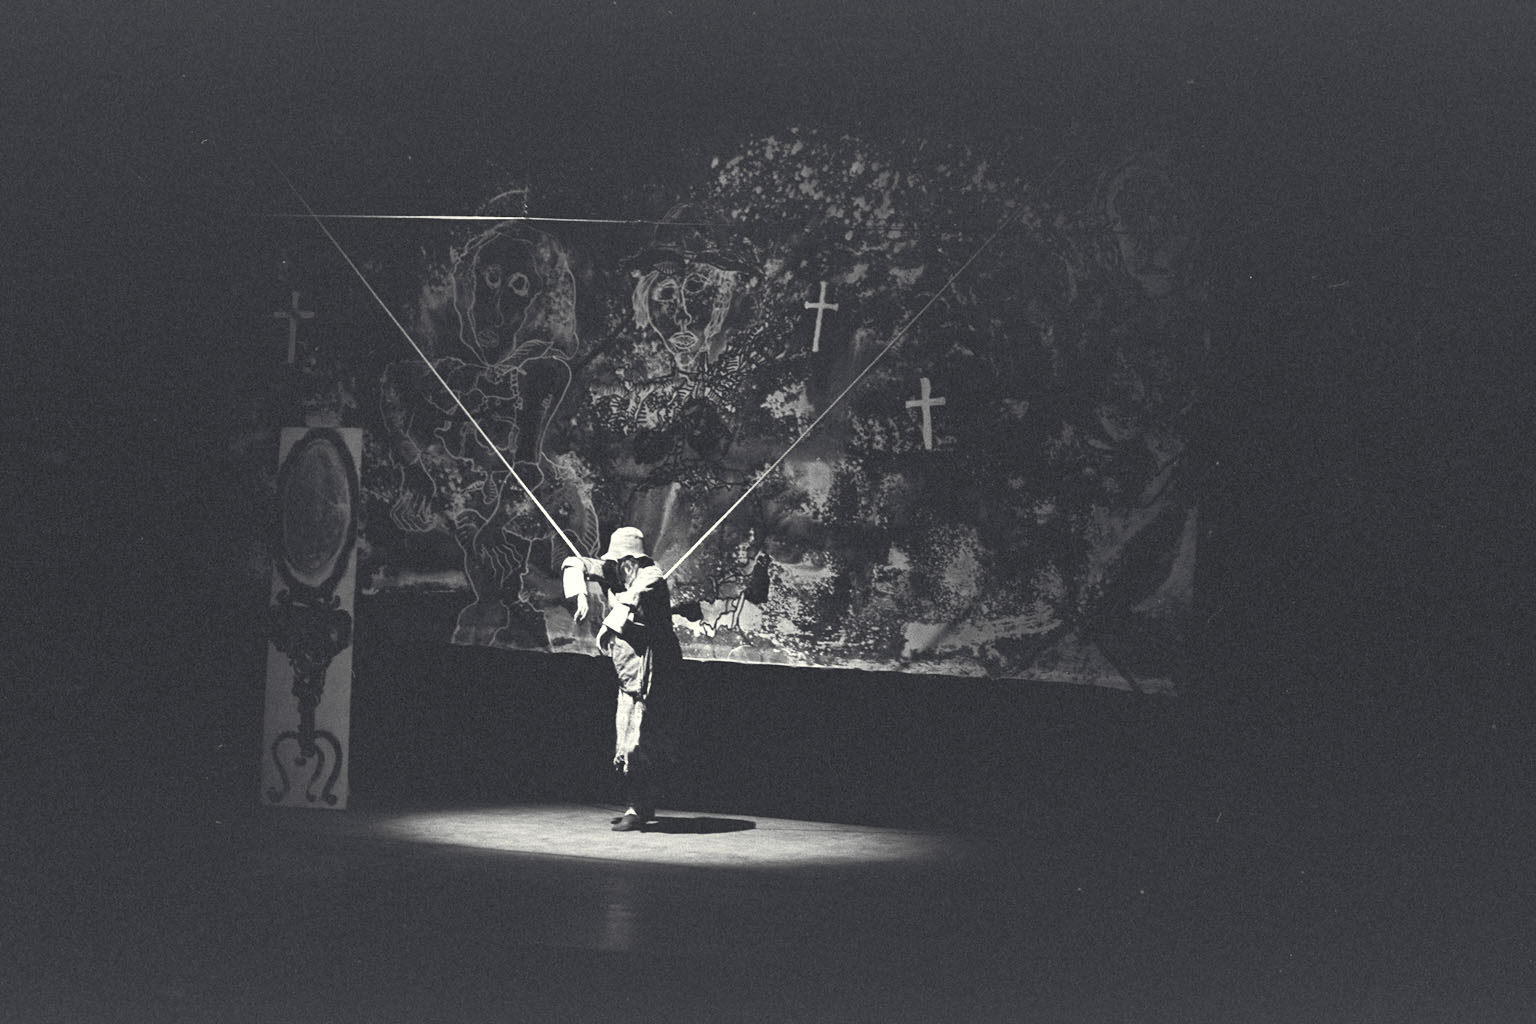 Fotografia. Pau Barceló. Ronda de mort a Sinera. Teatre Romea, 1966